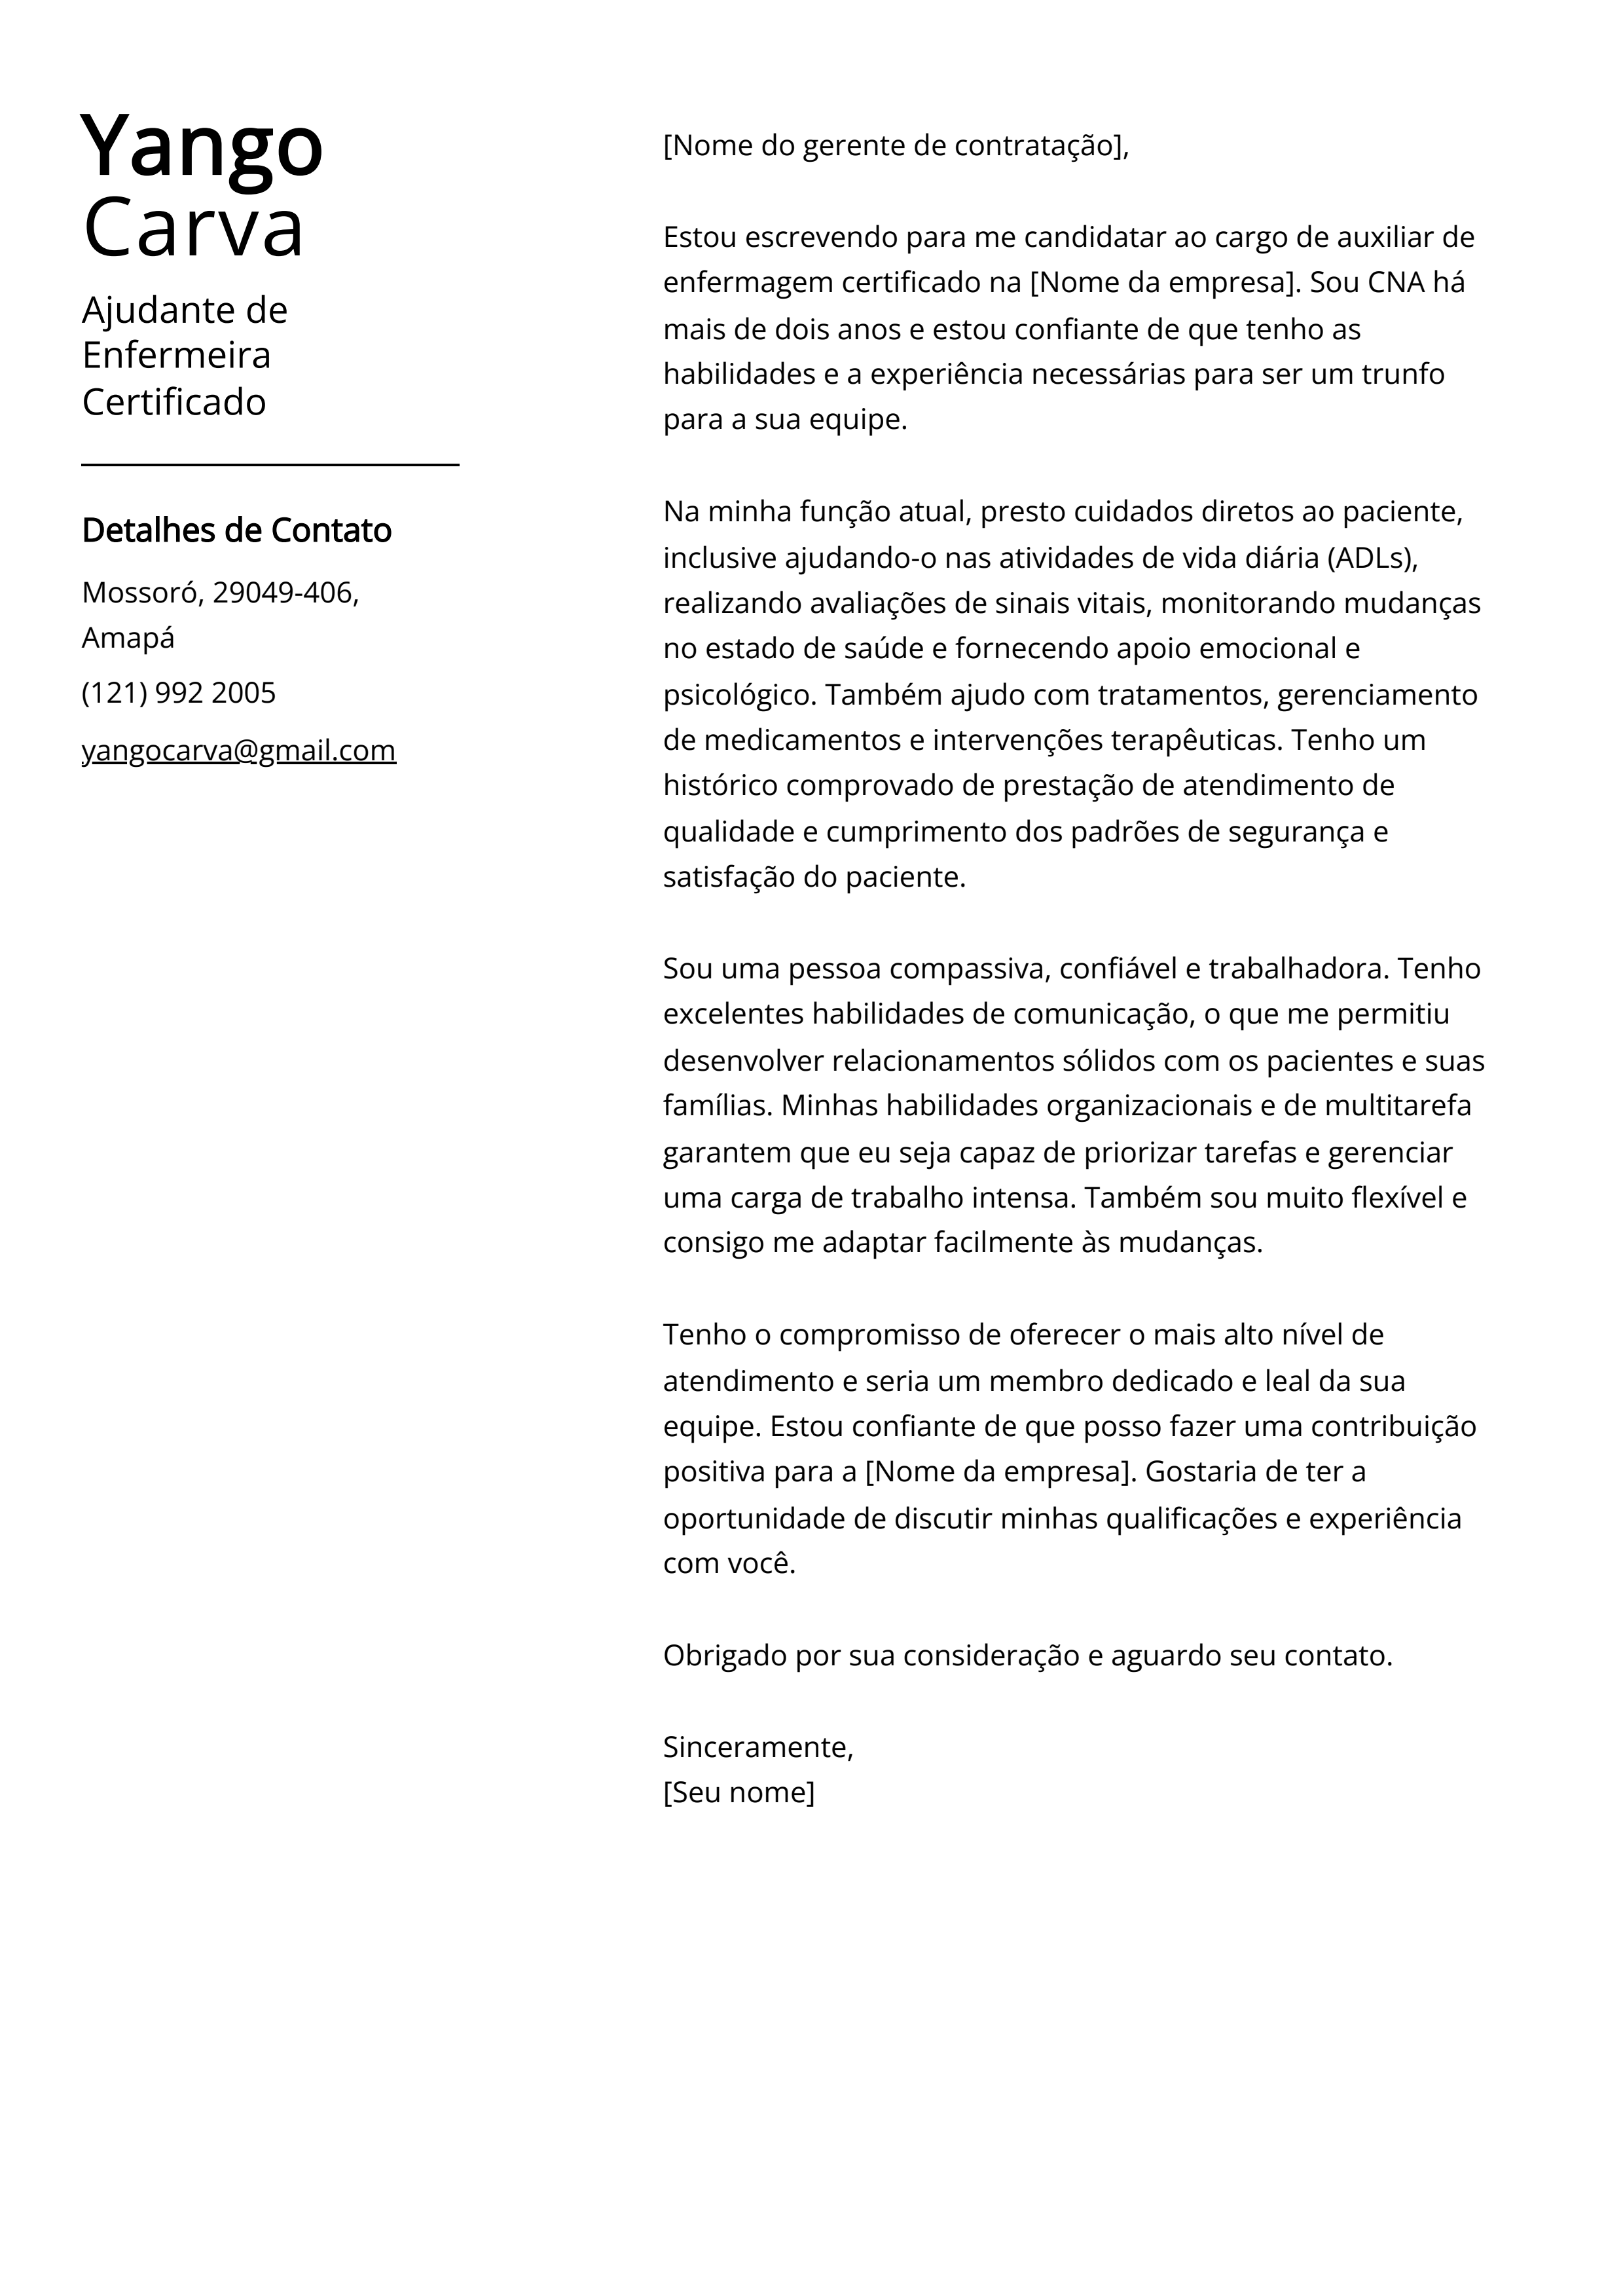 Exemplo de carta de apresentação do Certificado de Ajudante de Enfermeira